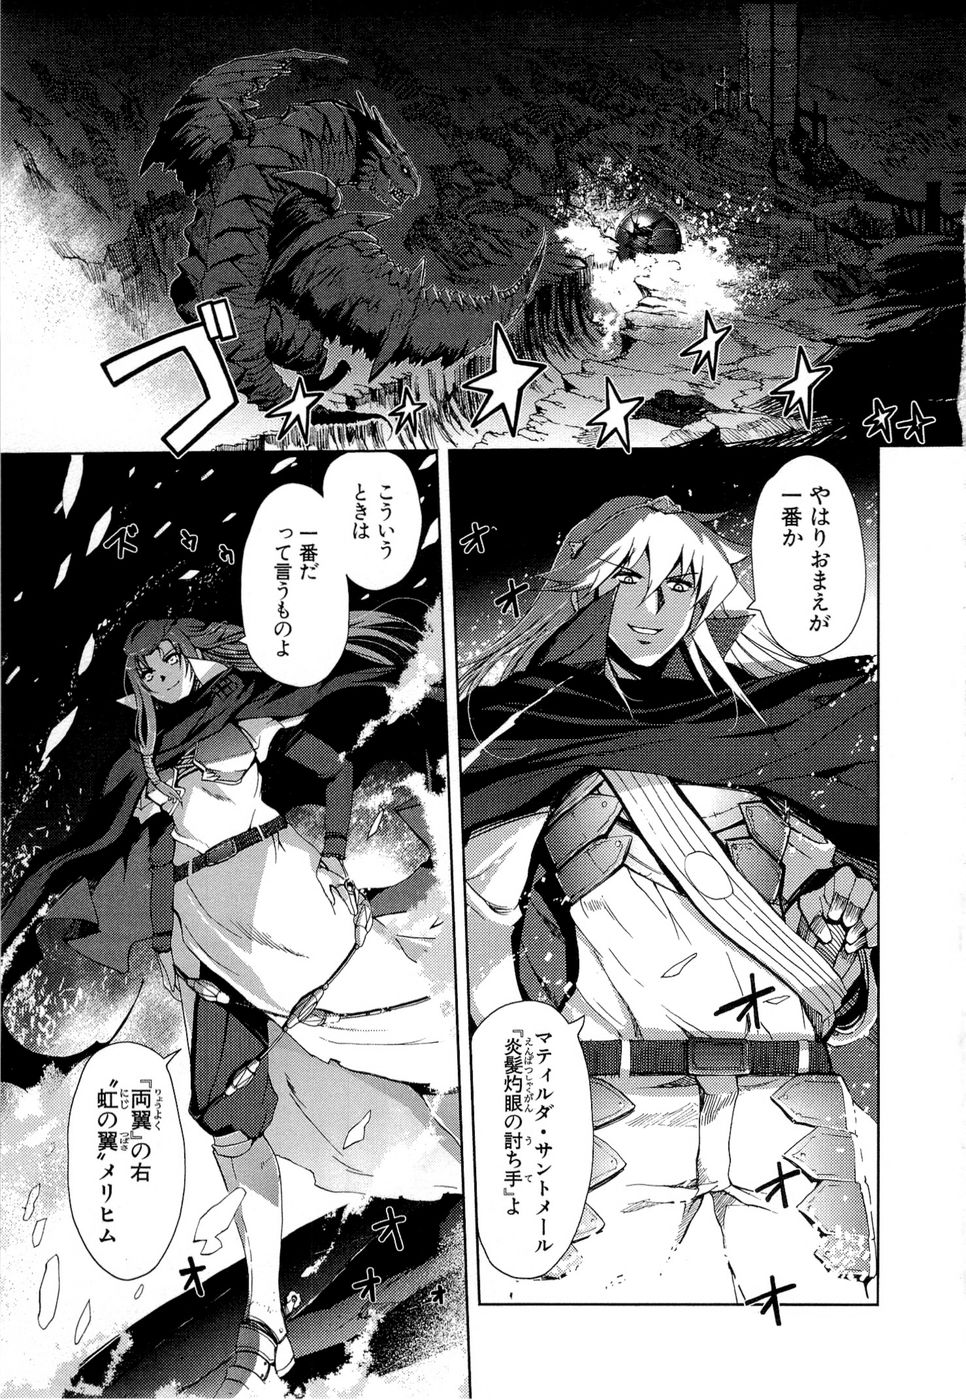 Shakugan no Shana X Eternal Song – Harukanaru Uta - Chapter 6 - Page 1